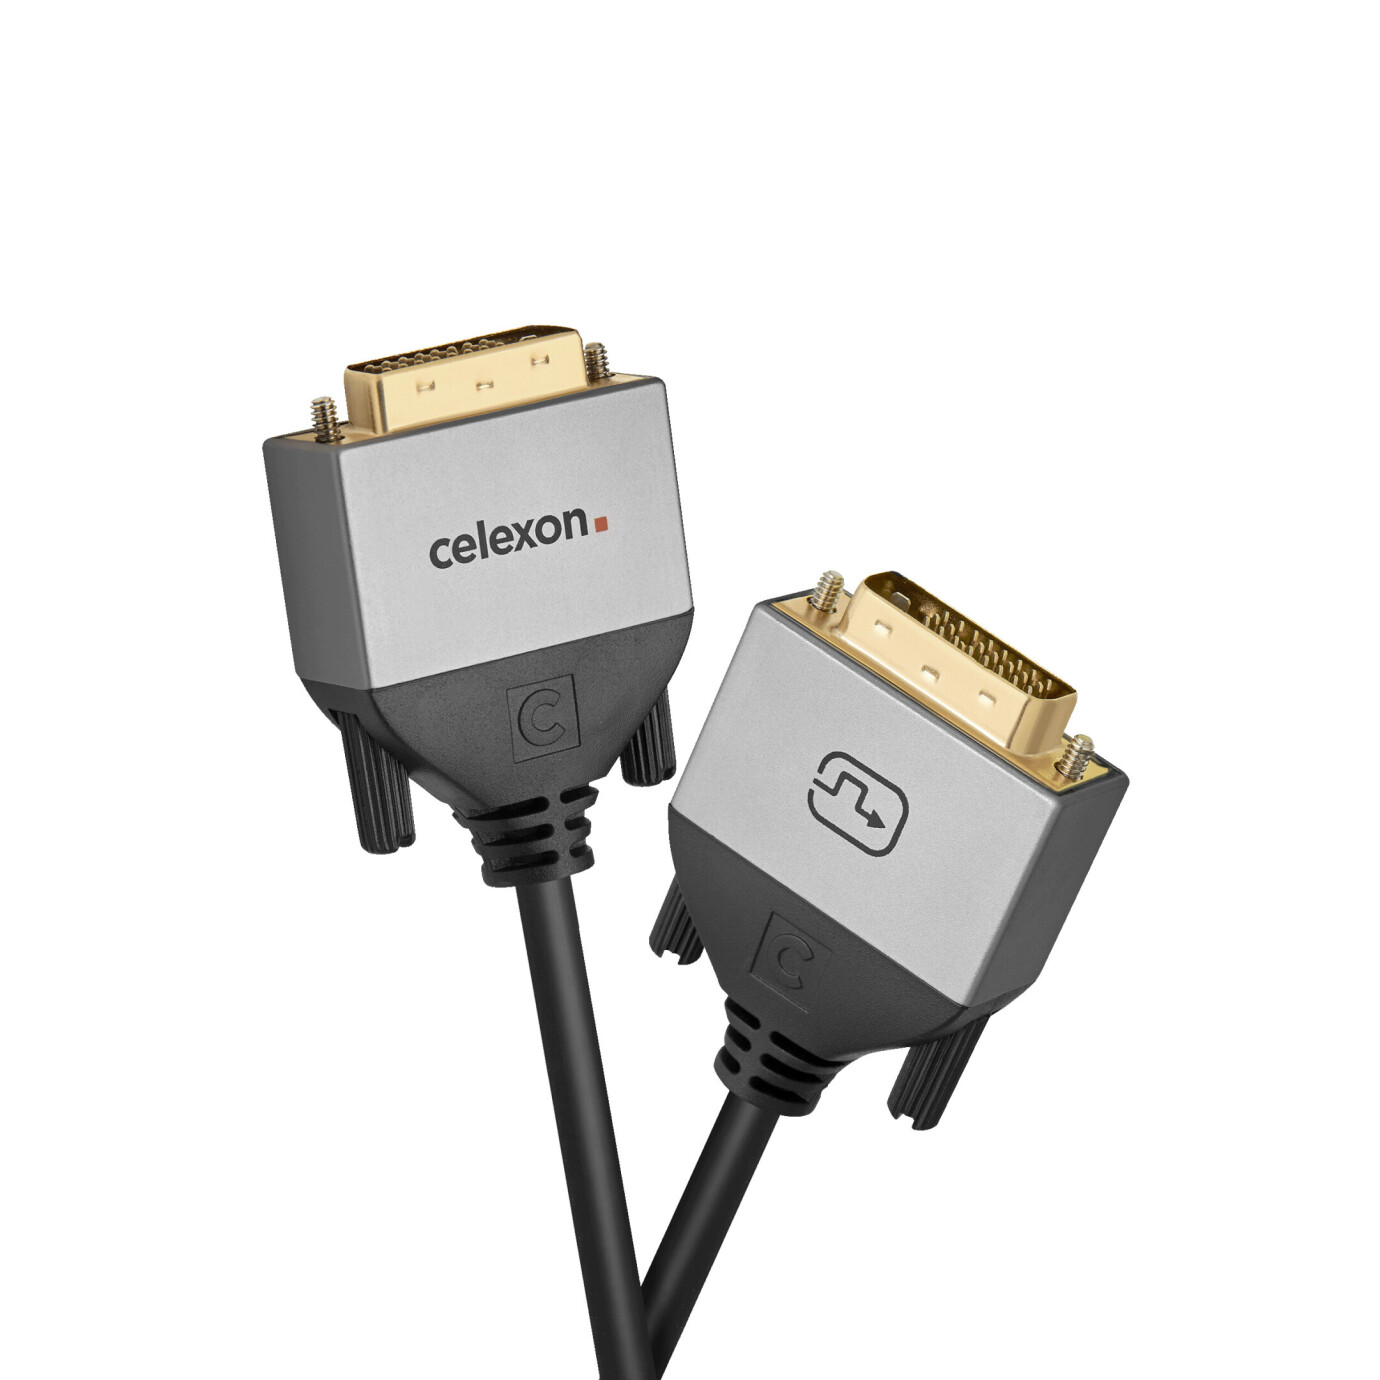 Vorschau: celexon DVI Dual Link Kabel 5,0m - Professional Line